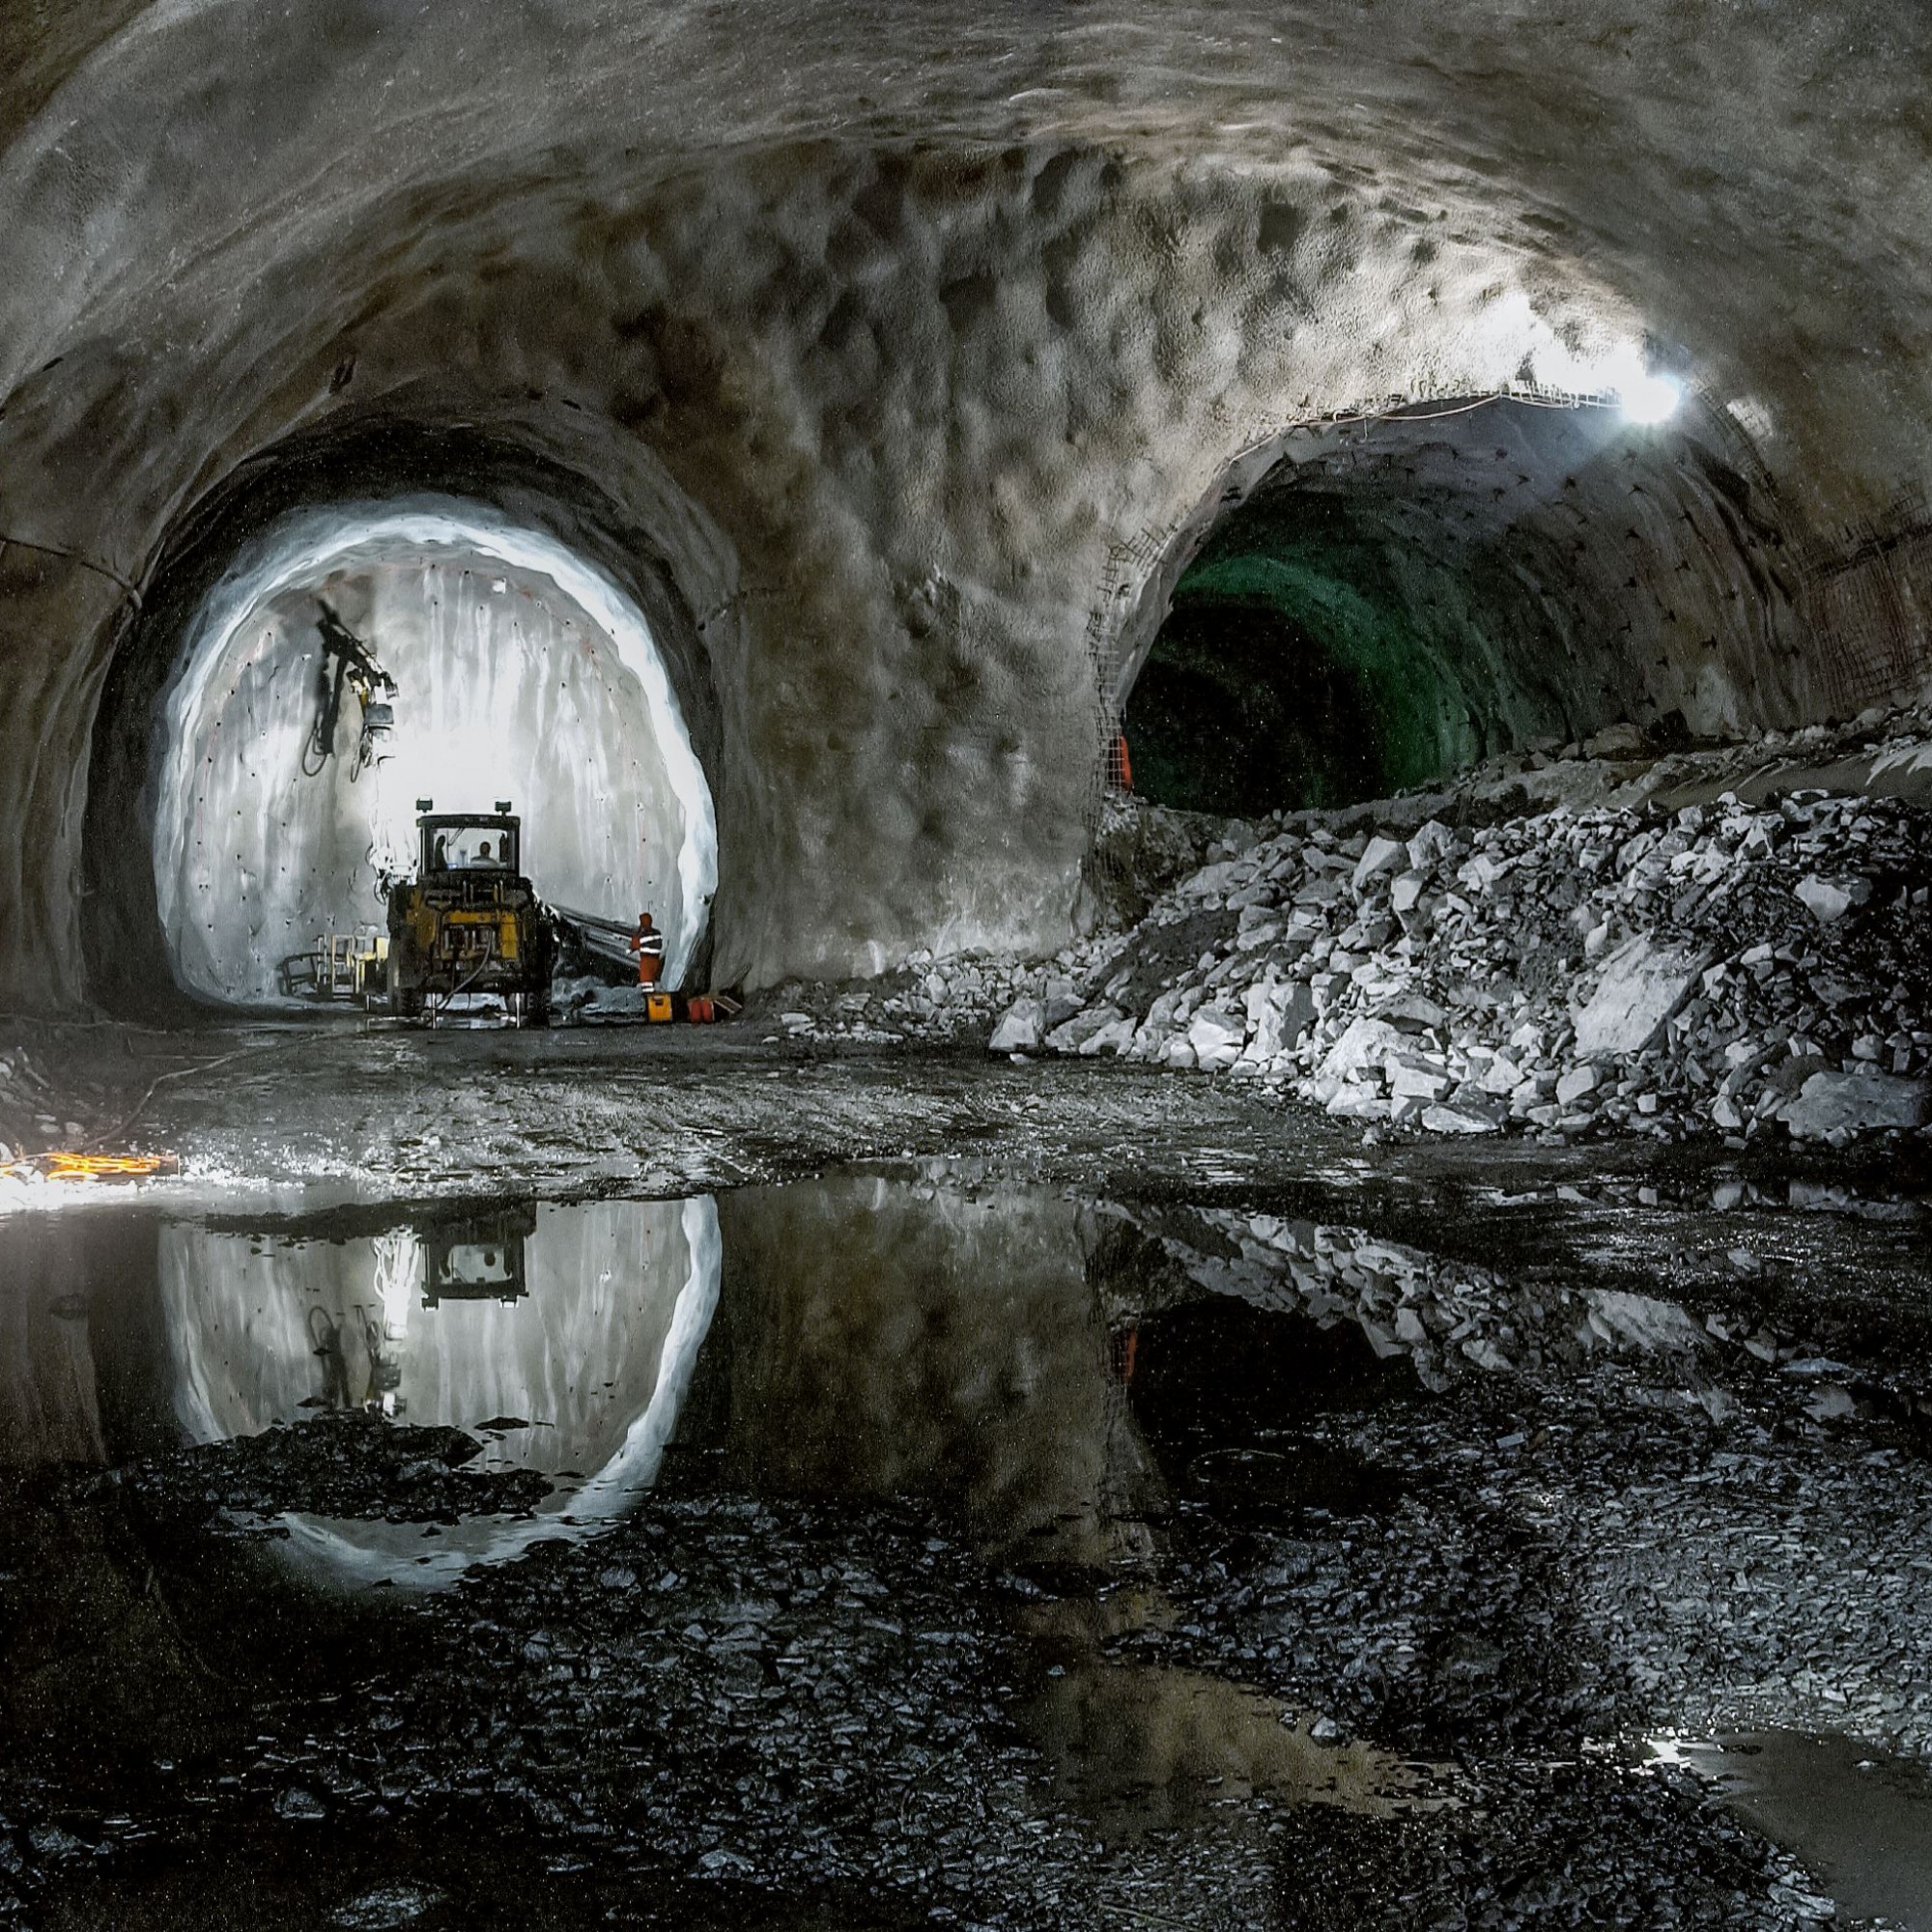 Der Neat-Basistunnel am Lötschberg ist Teil des Ausbauprogramms 2035. Der Ausbau betrifft Geleise, Fahrleitung und Elektronik, nicht den vollständigen Ausbruch der zweiten Röhre. Sechs Kilometer werden weiterhin nur einspurig befahrbar sein. 